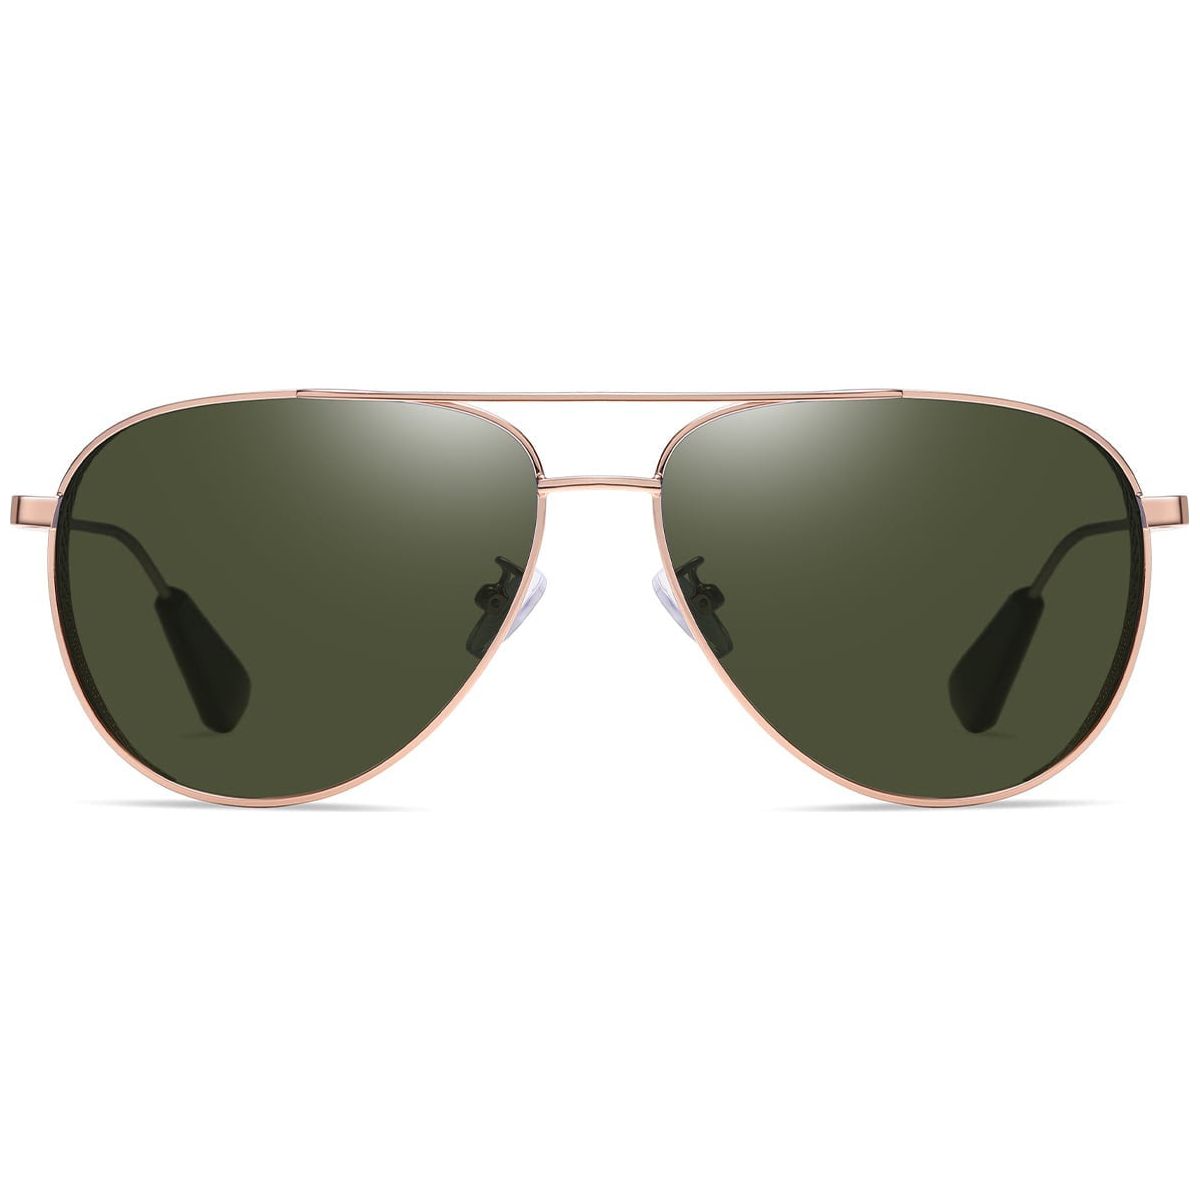 Candye Aviator Sunglasses SG5387 